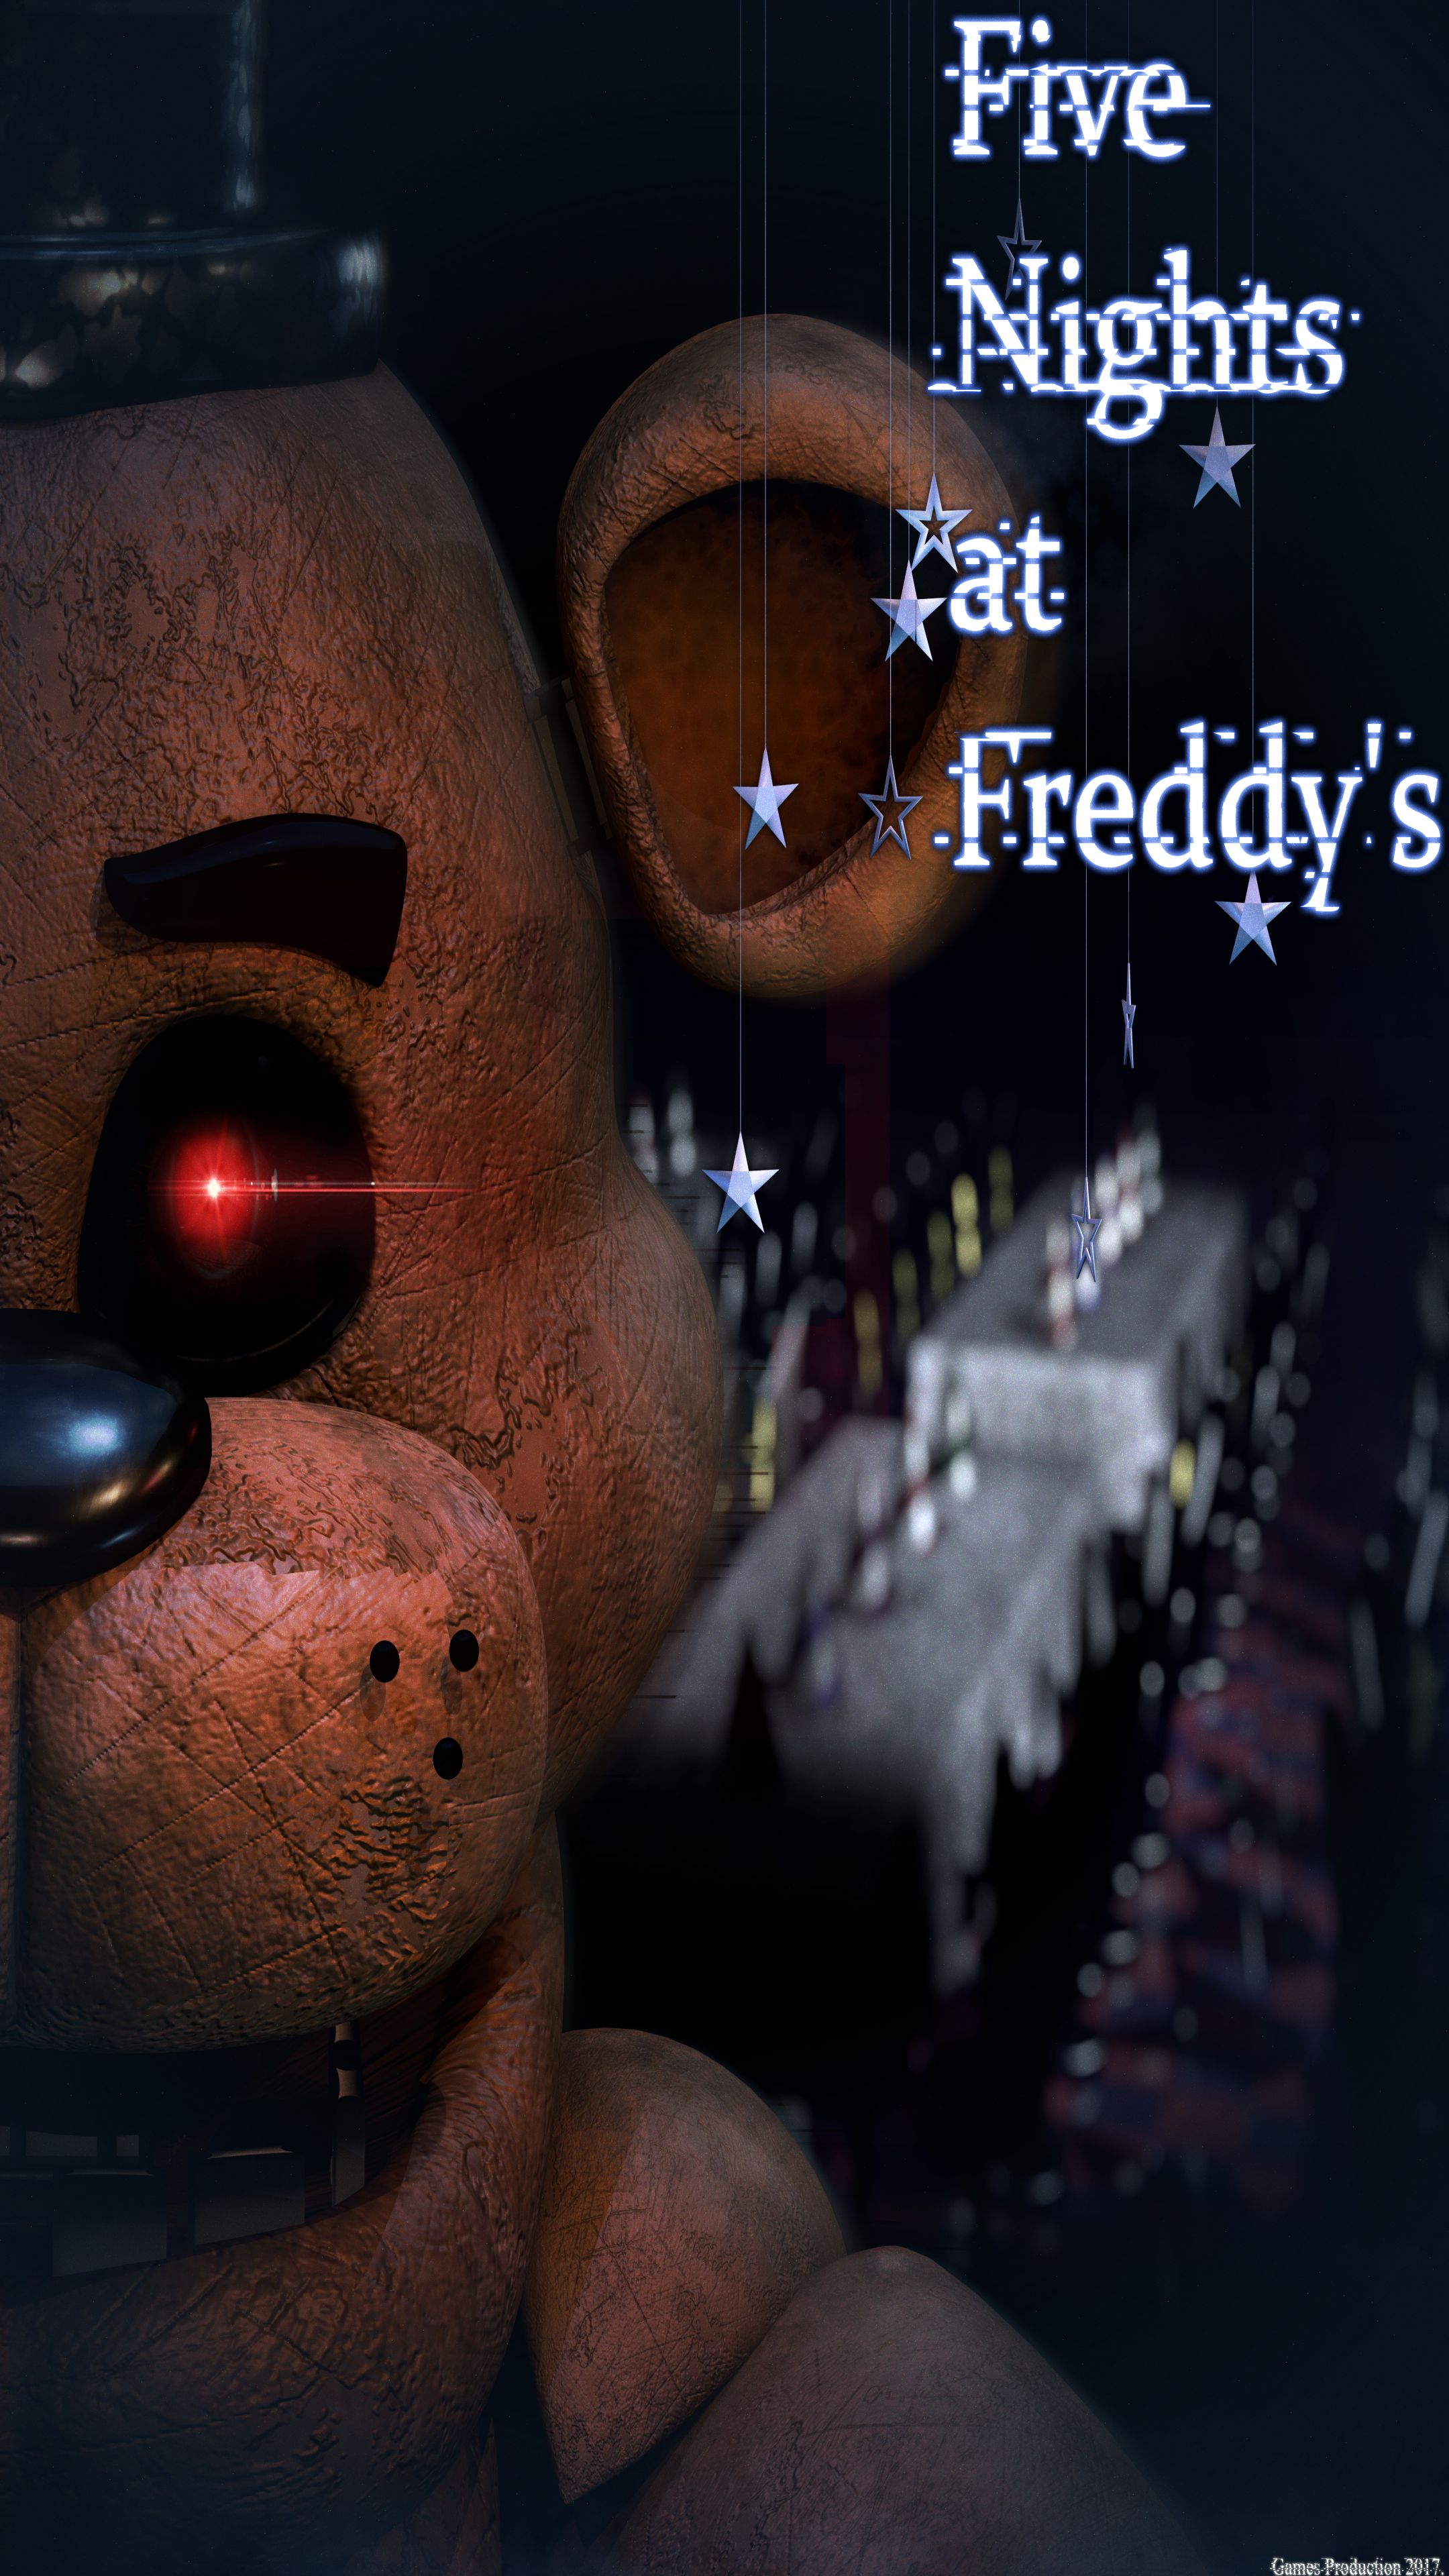 Descarga gratuita de fondo de pantalla para móvil de Videojuego, Cinco Noches En Freddy's, Five Nights At Freddy's.